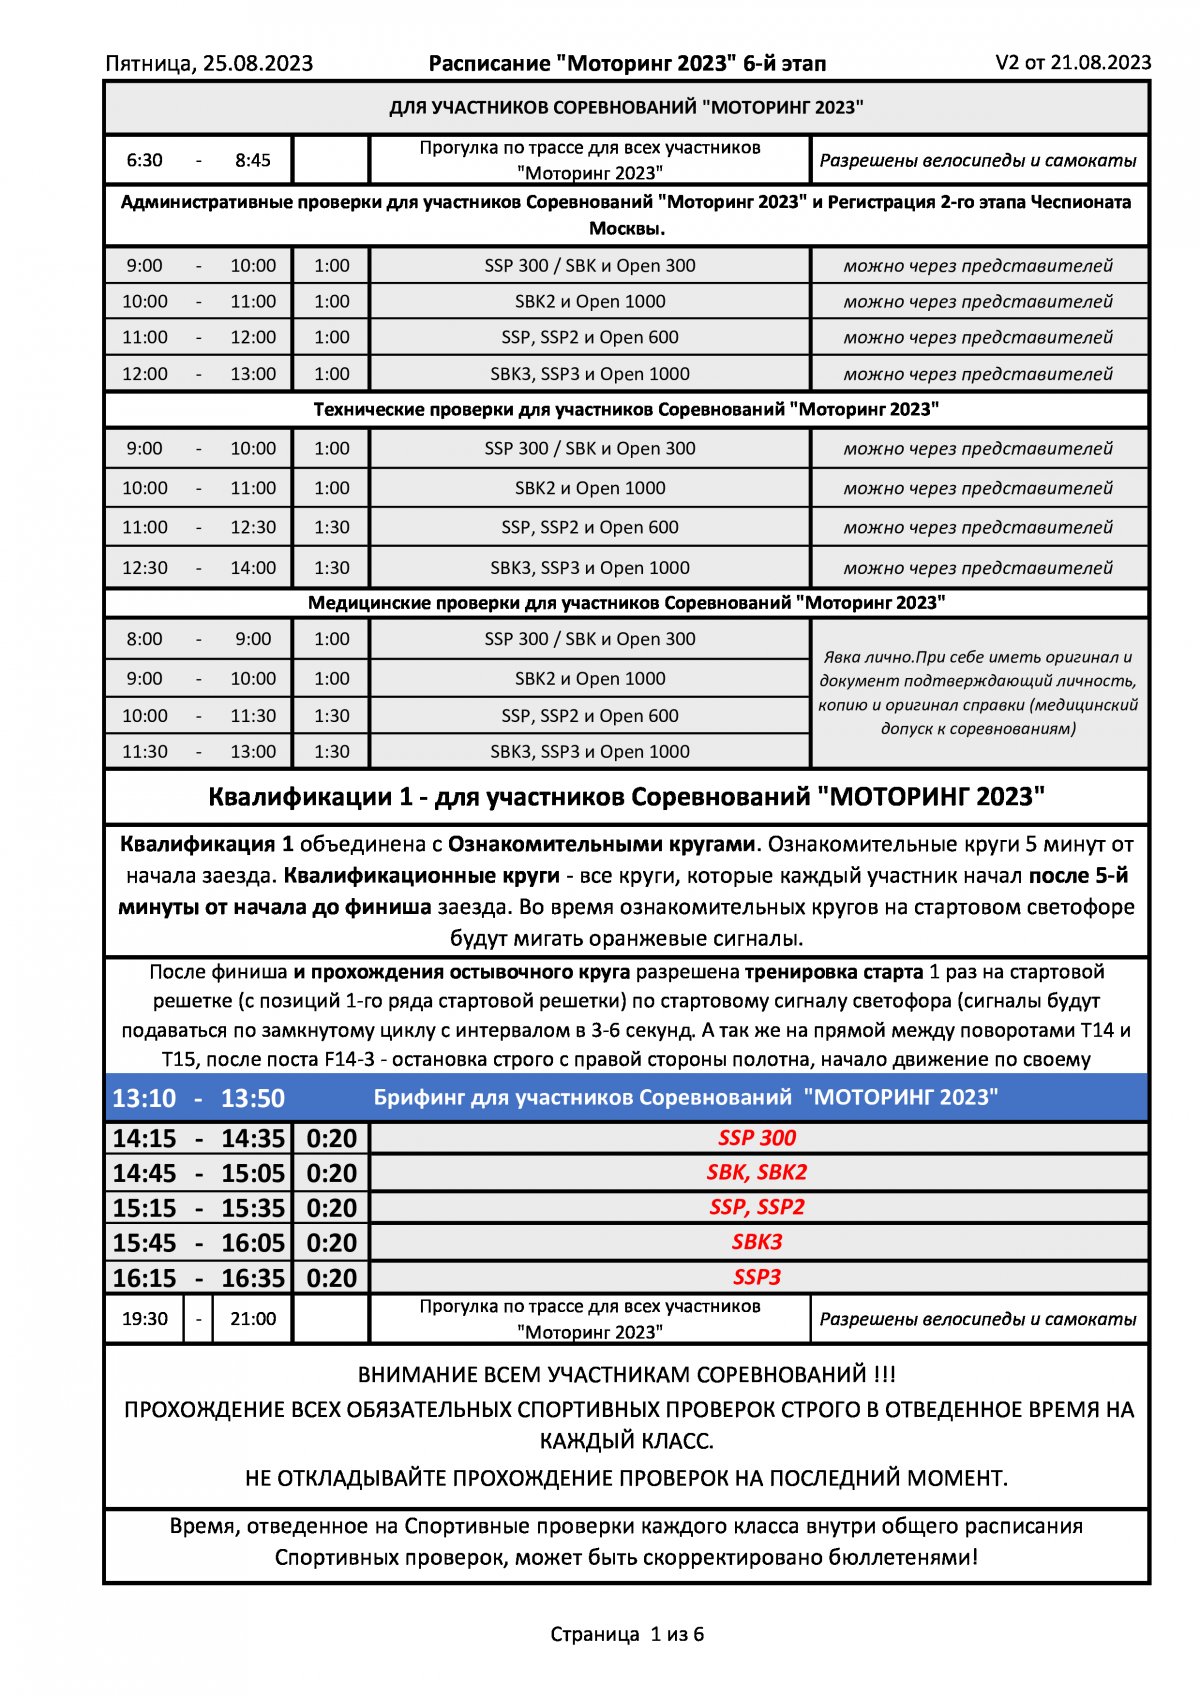 Расписание 6 этапа чемпионата России по ШКМГ, Moscow Raceway